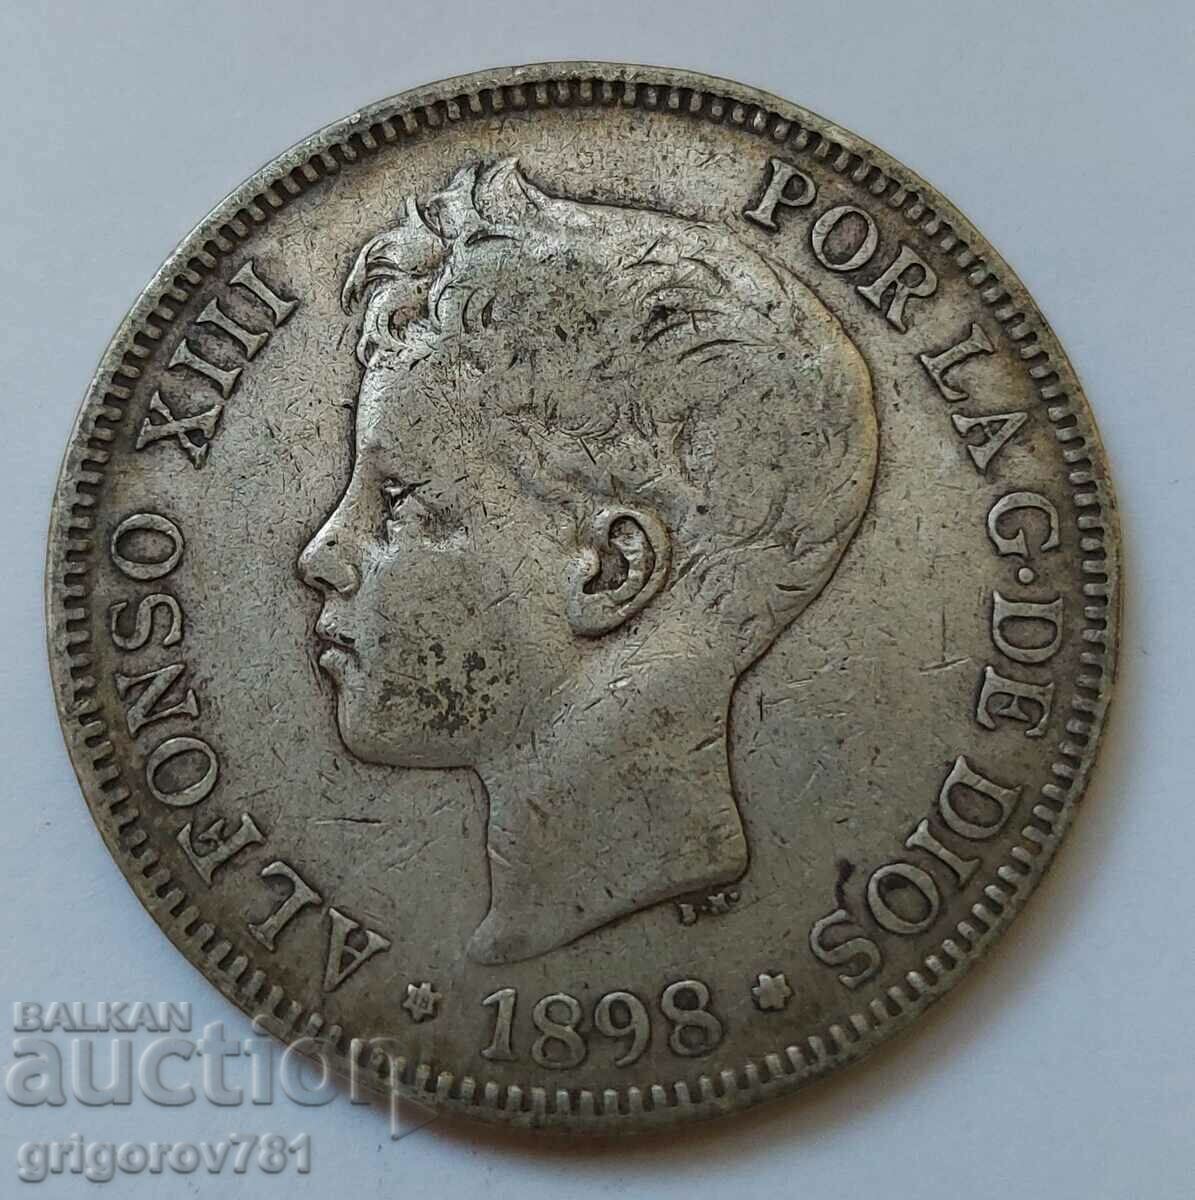 5 Pesetas Silver Spain 1898 - Silver Coin #110